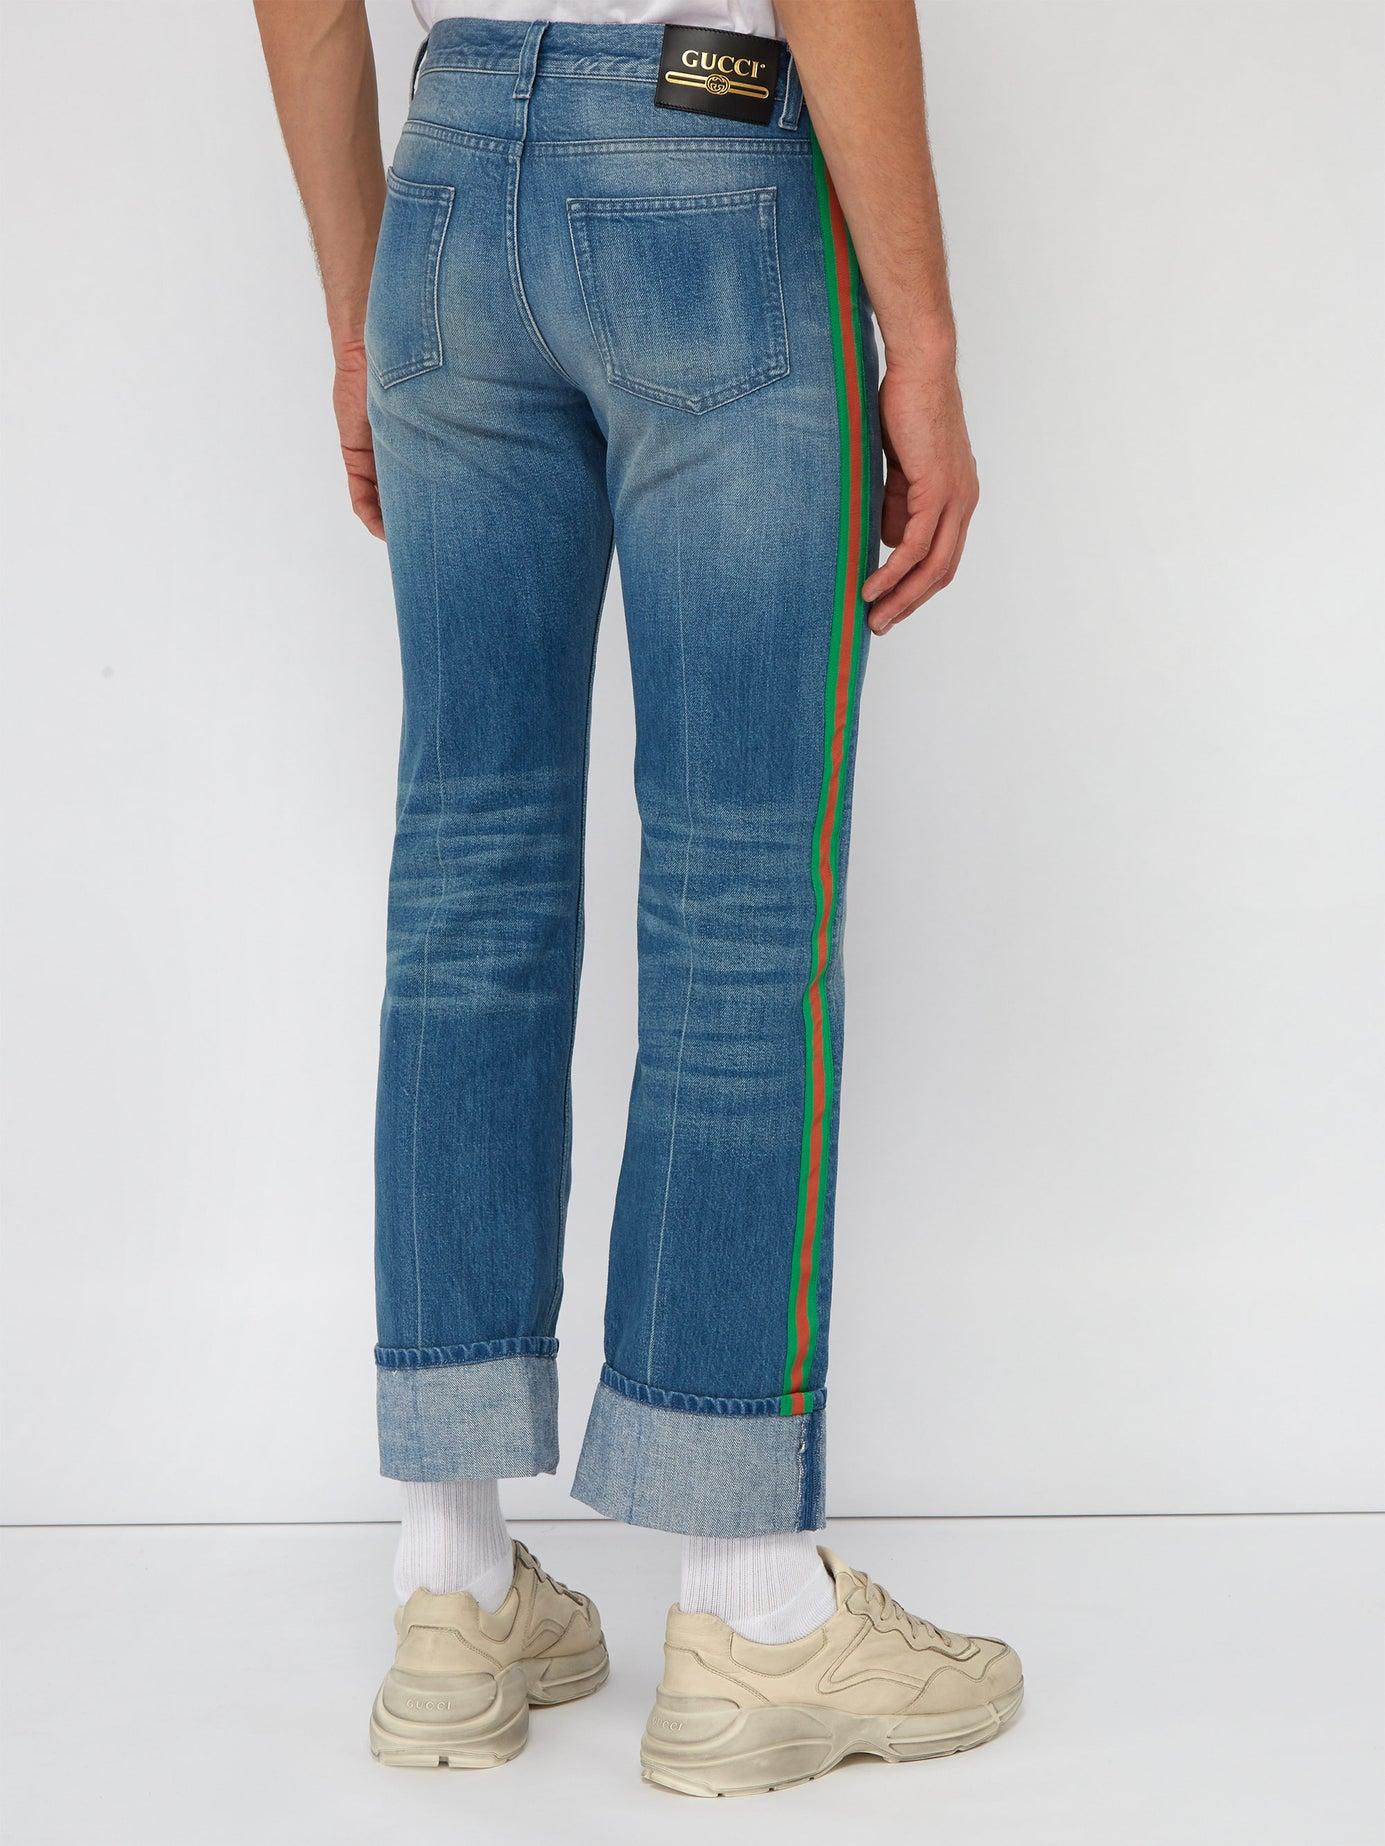 Gucci Denim Web Side-stripe Jeans in Blue for Men - Lyst